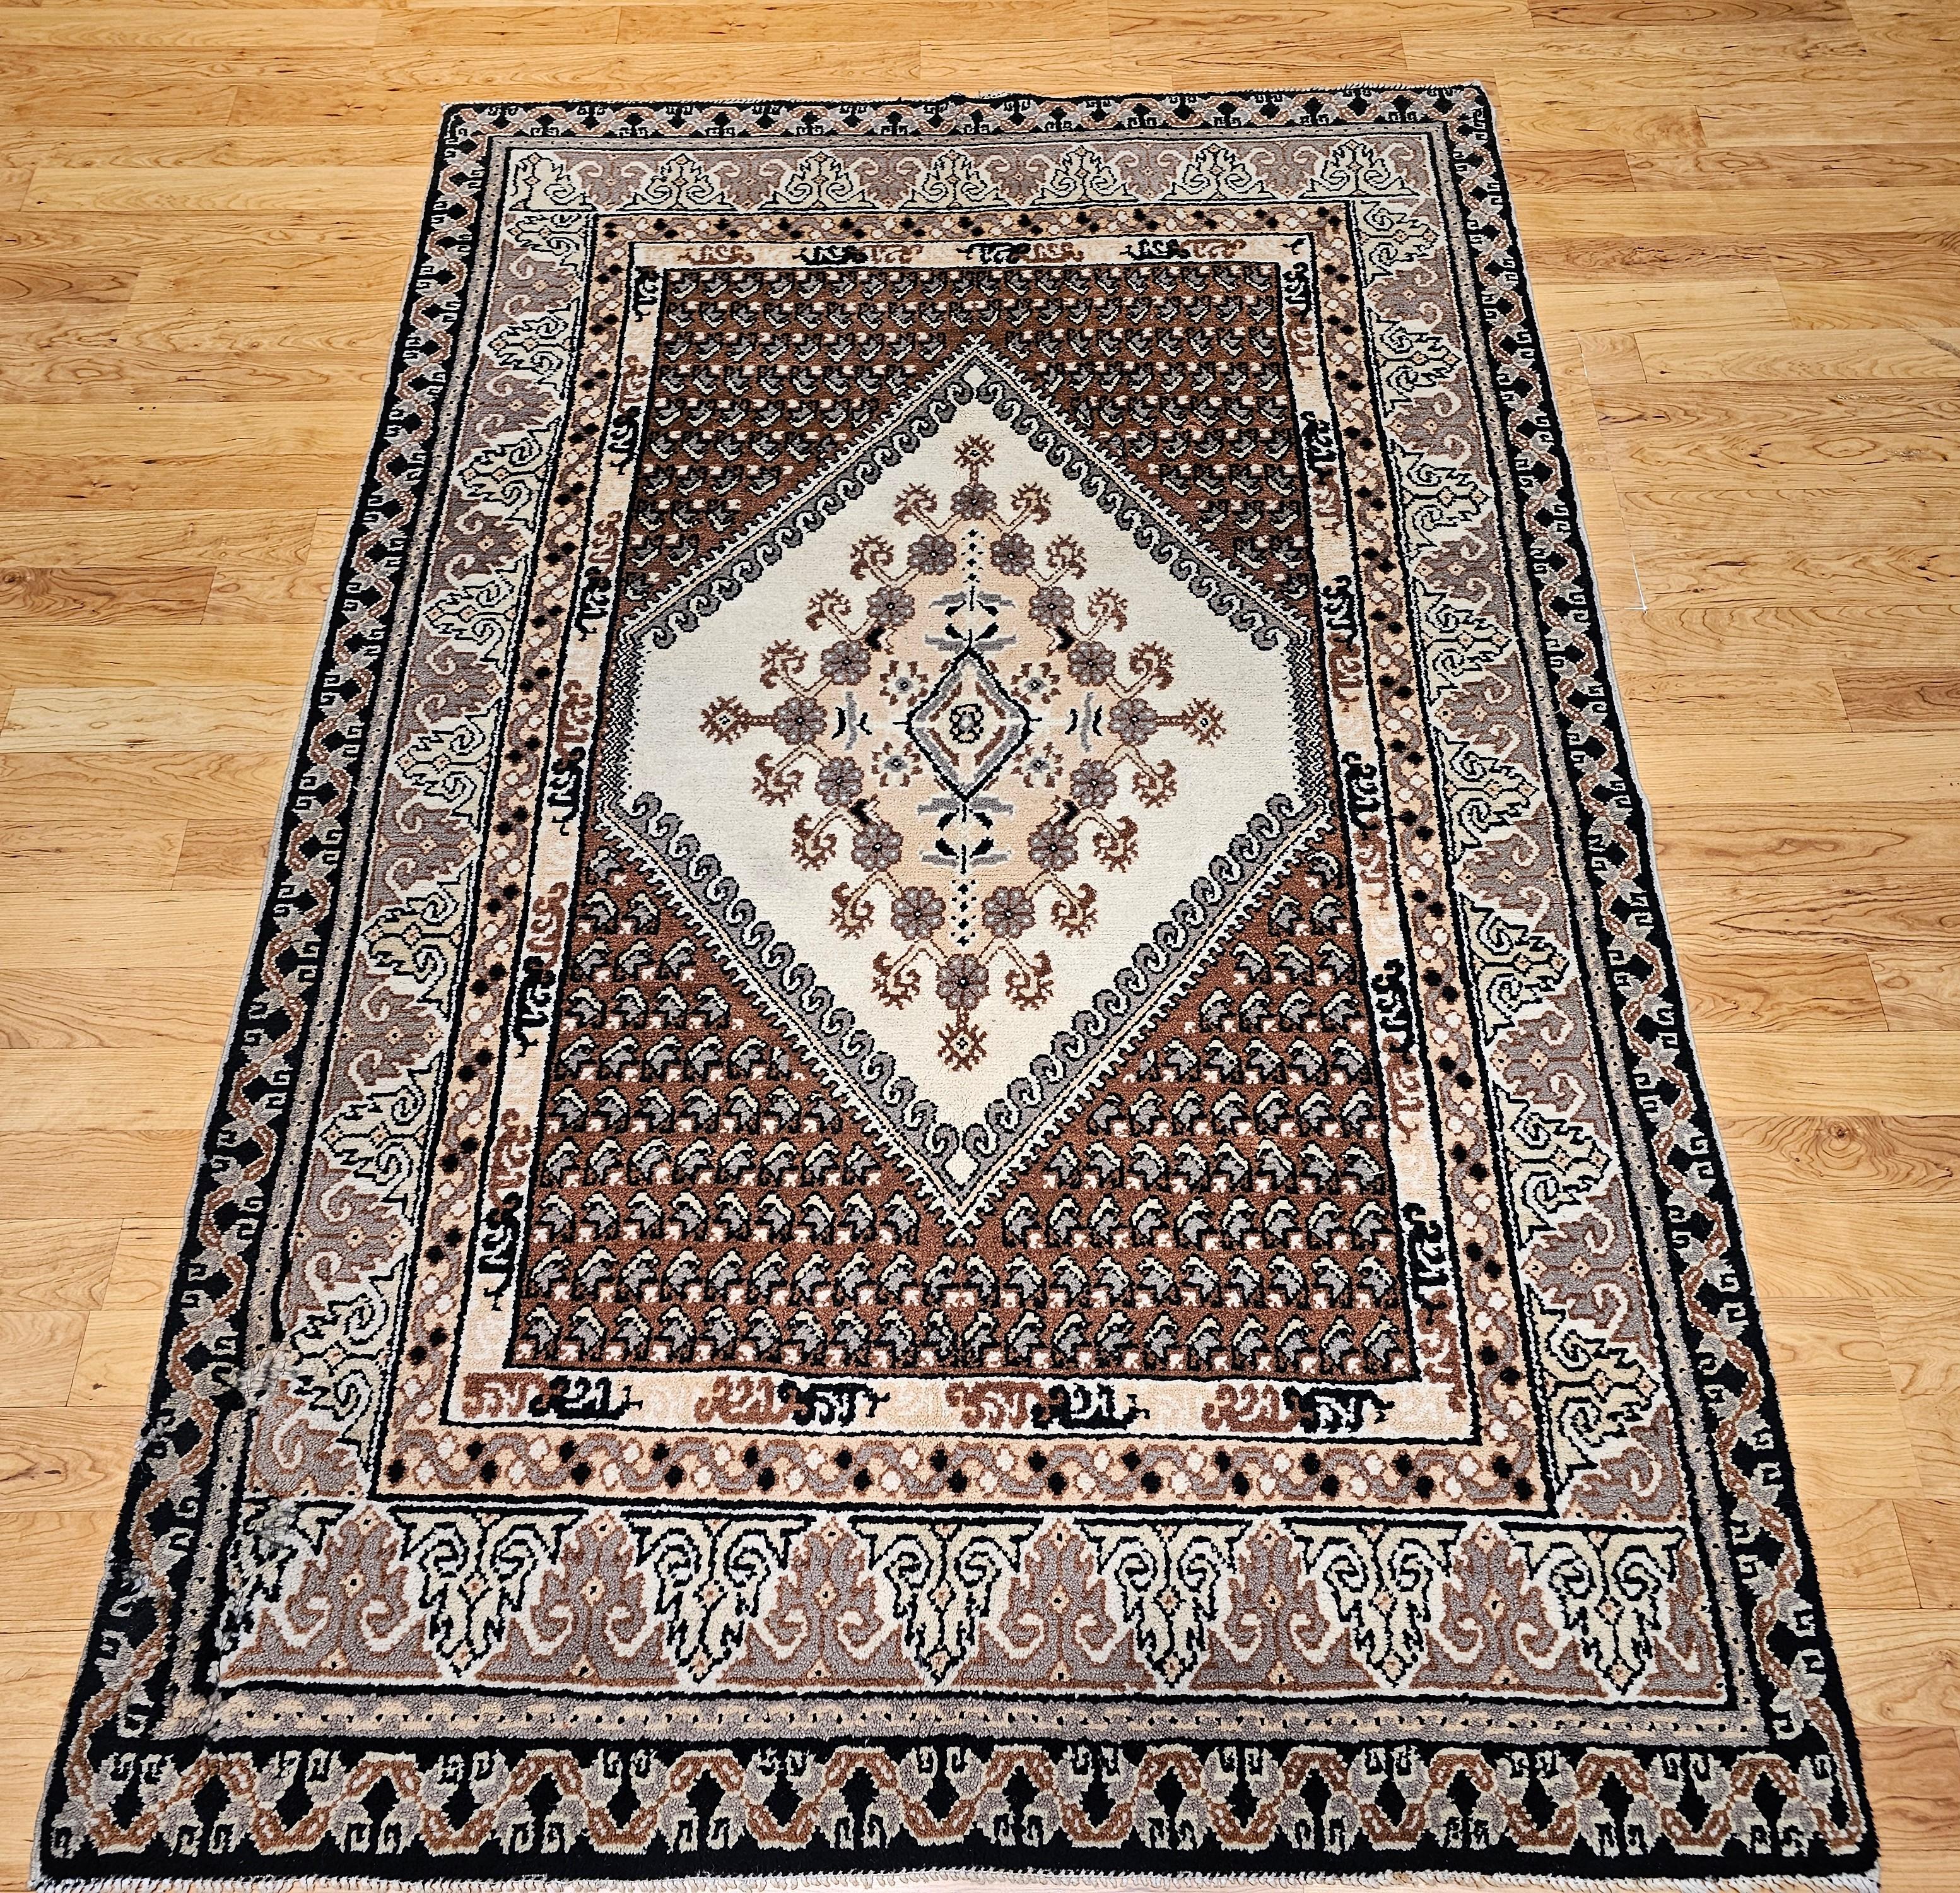 Marokkanischer Vintage-Teppich in Zimmergröße mit geometrischem Muster in Elfenbein, Braun, Schokolade und Grau.  Dieser marokkanische Teppich hat ein zentrales Medaillon in Elfenbein und Braun mit Ecken, die Paisleymuster in Schokoladenfarbe